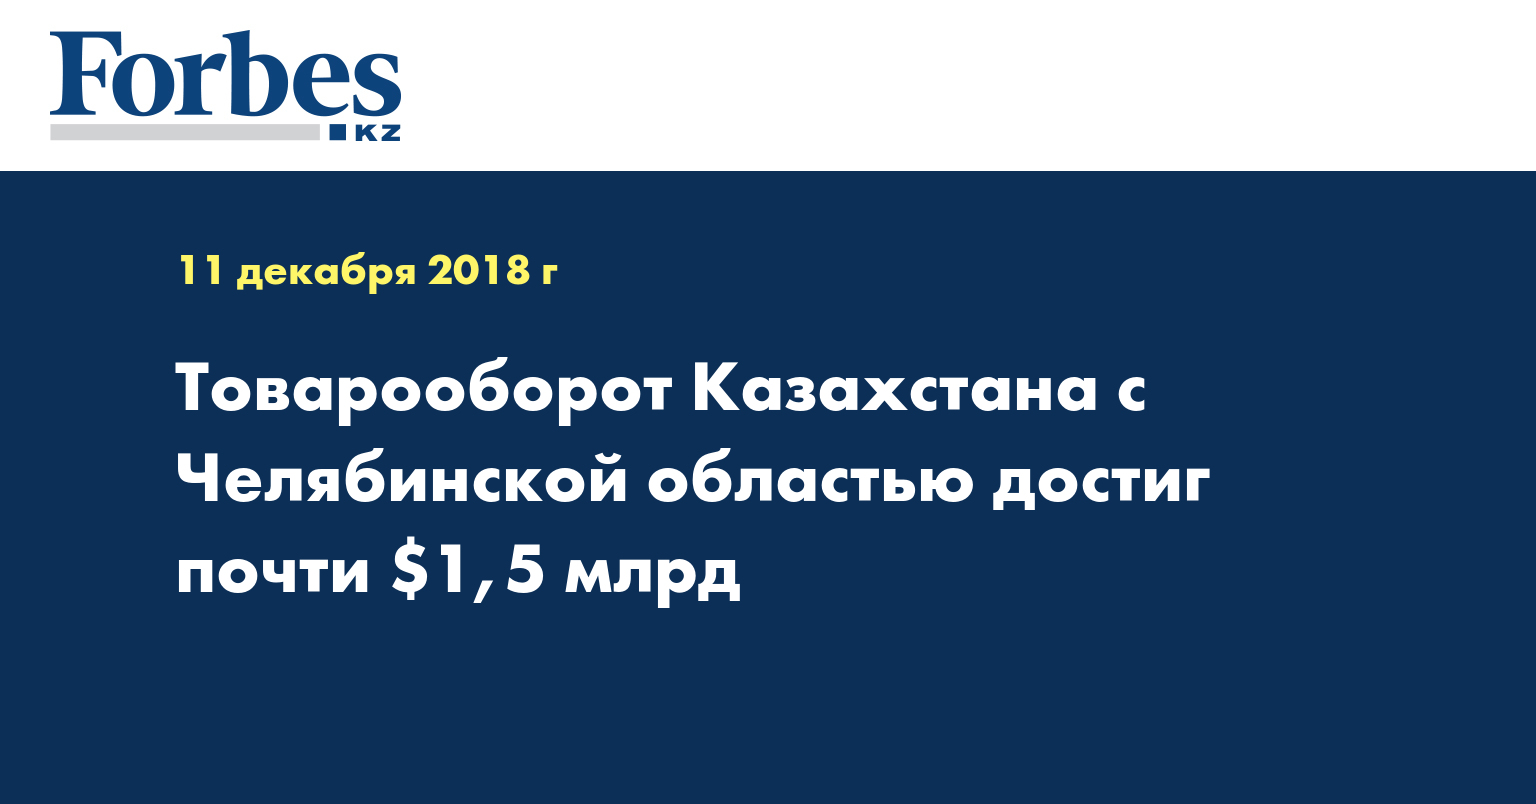 Товарооборот Казахстана с Челябинской областью достиг почти $1,5 млрд